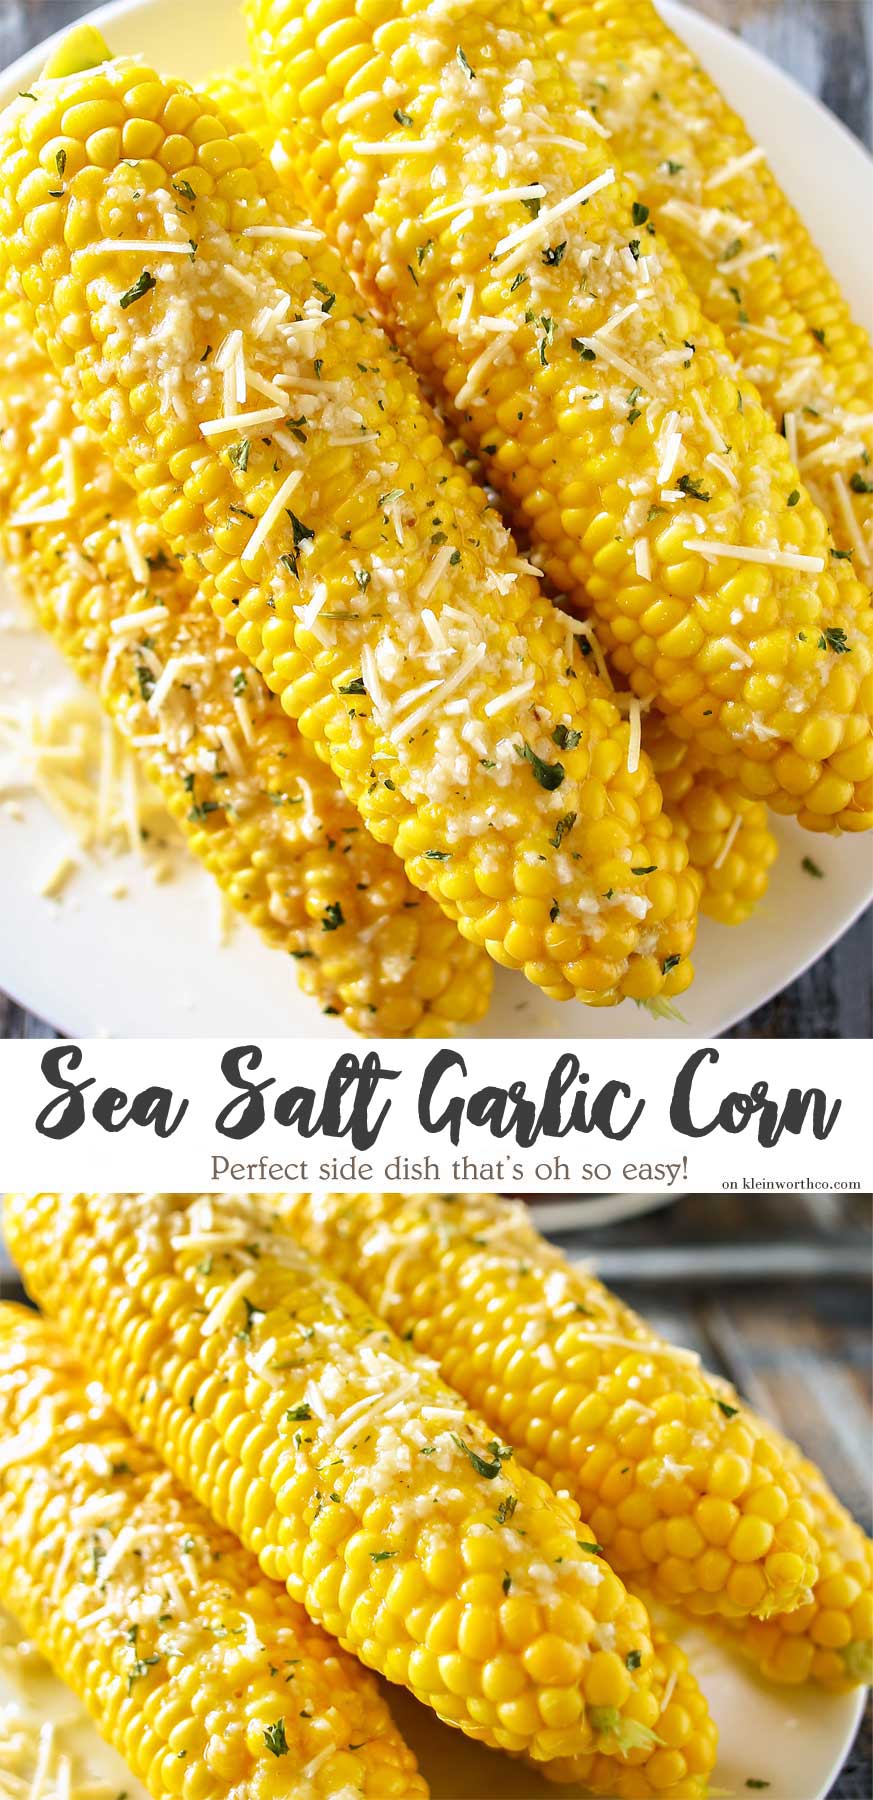 Sea Salt Garlic Corn